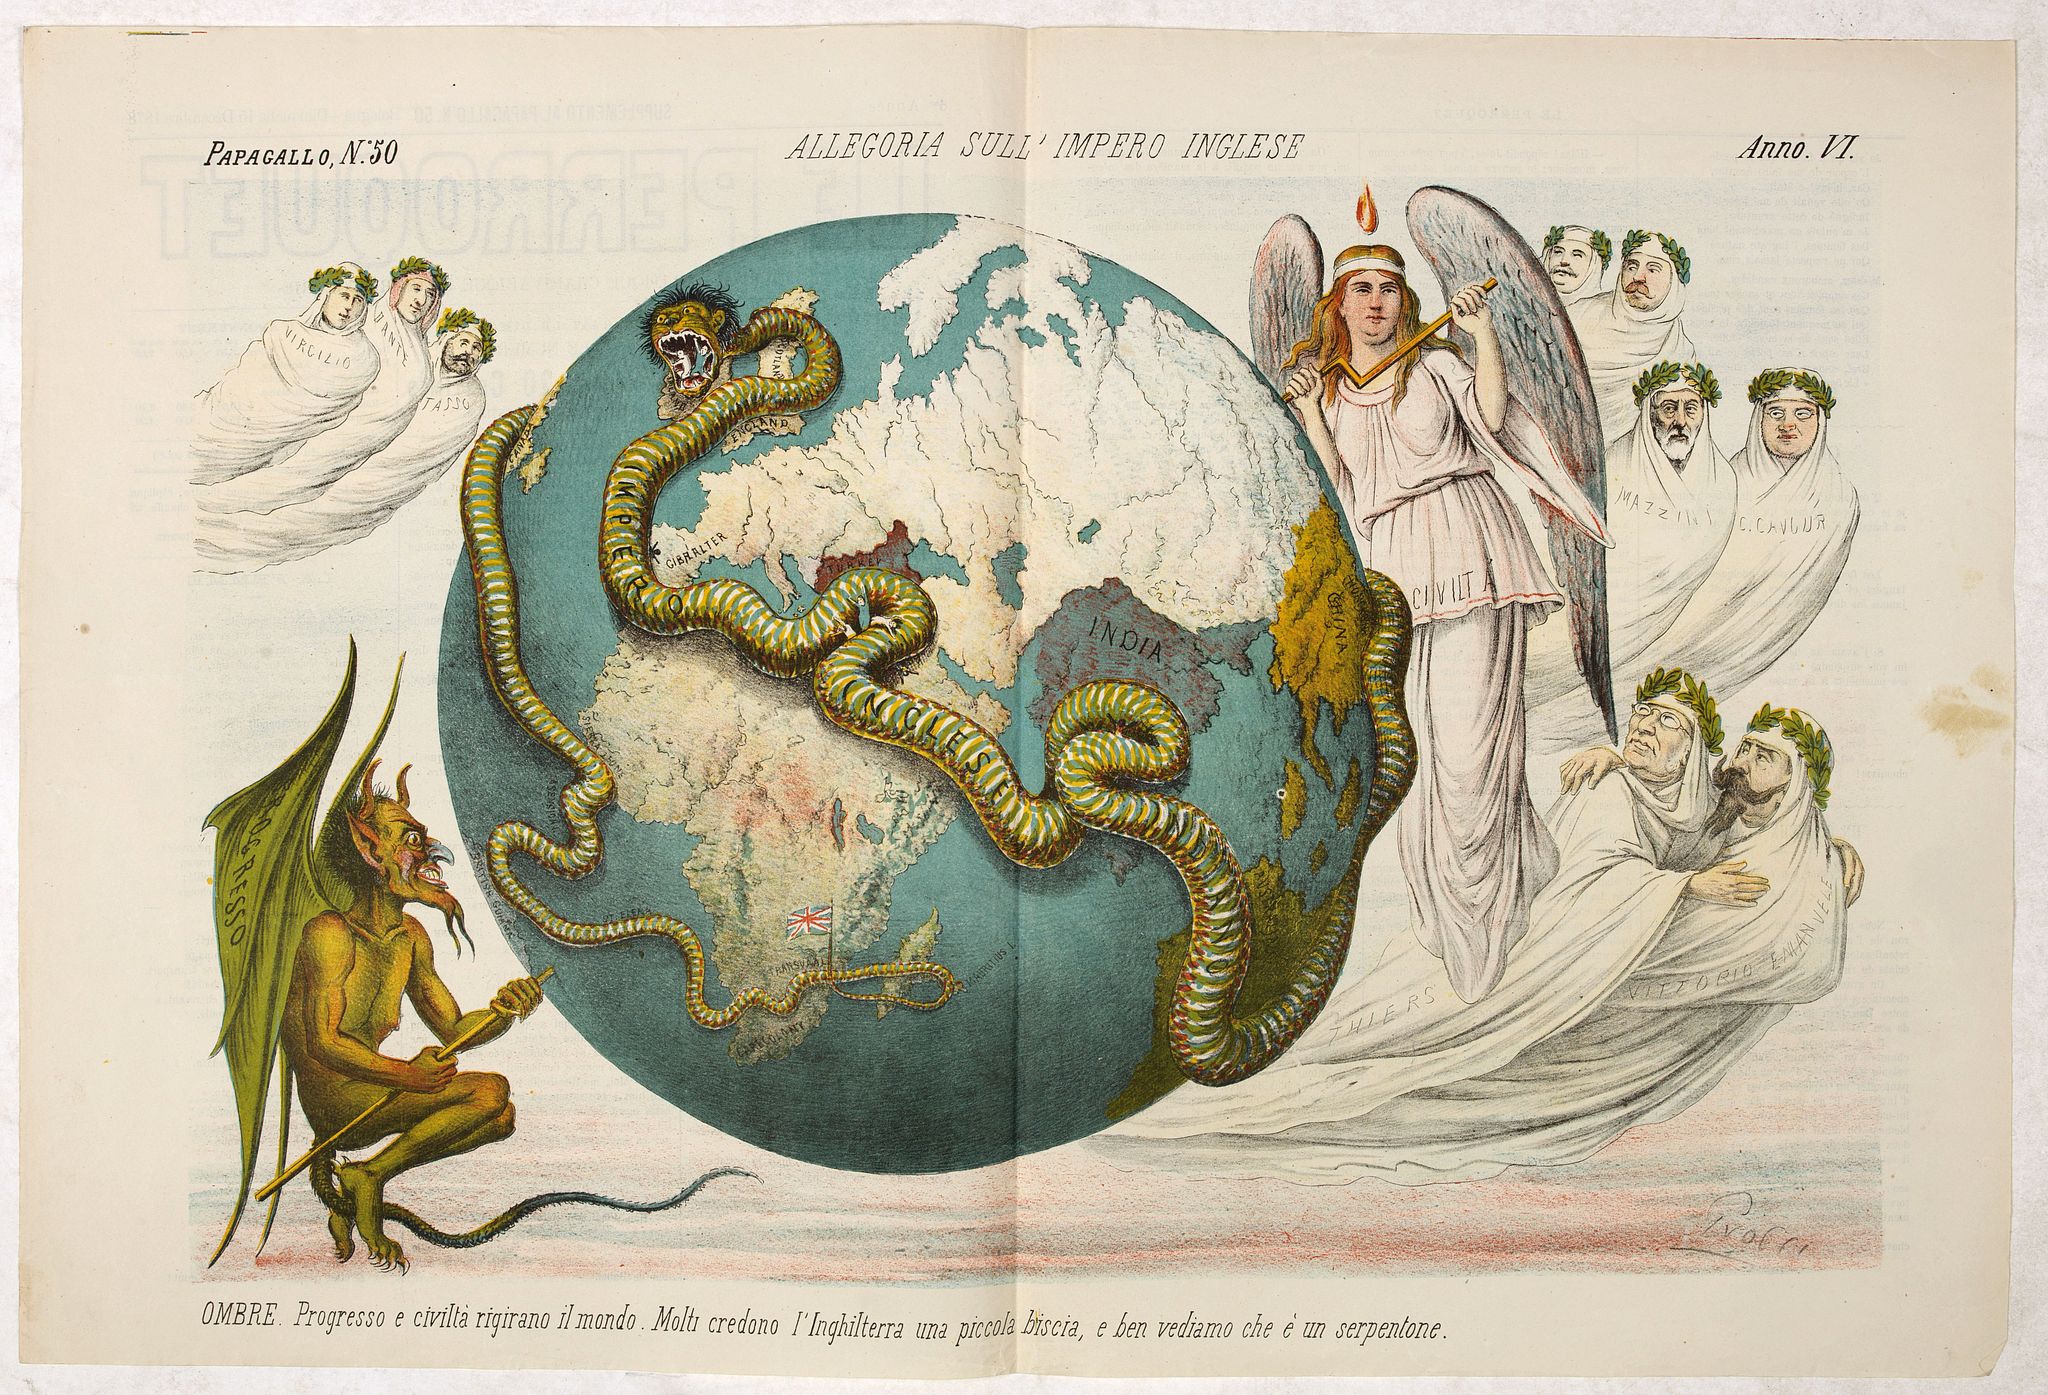 Allegoria sull'Impero Inglese. Papagallo No. 50. Anno VI